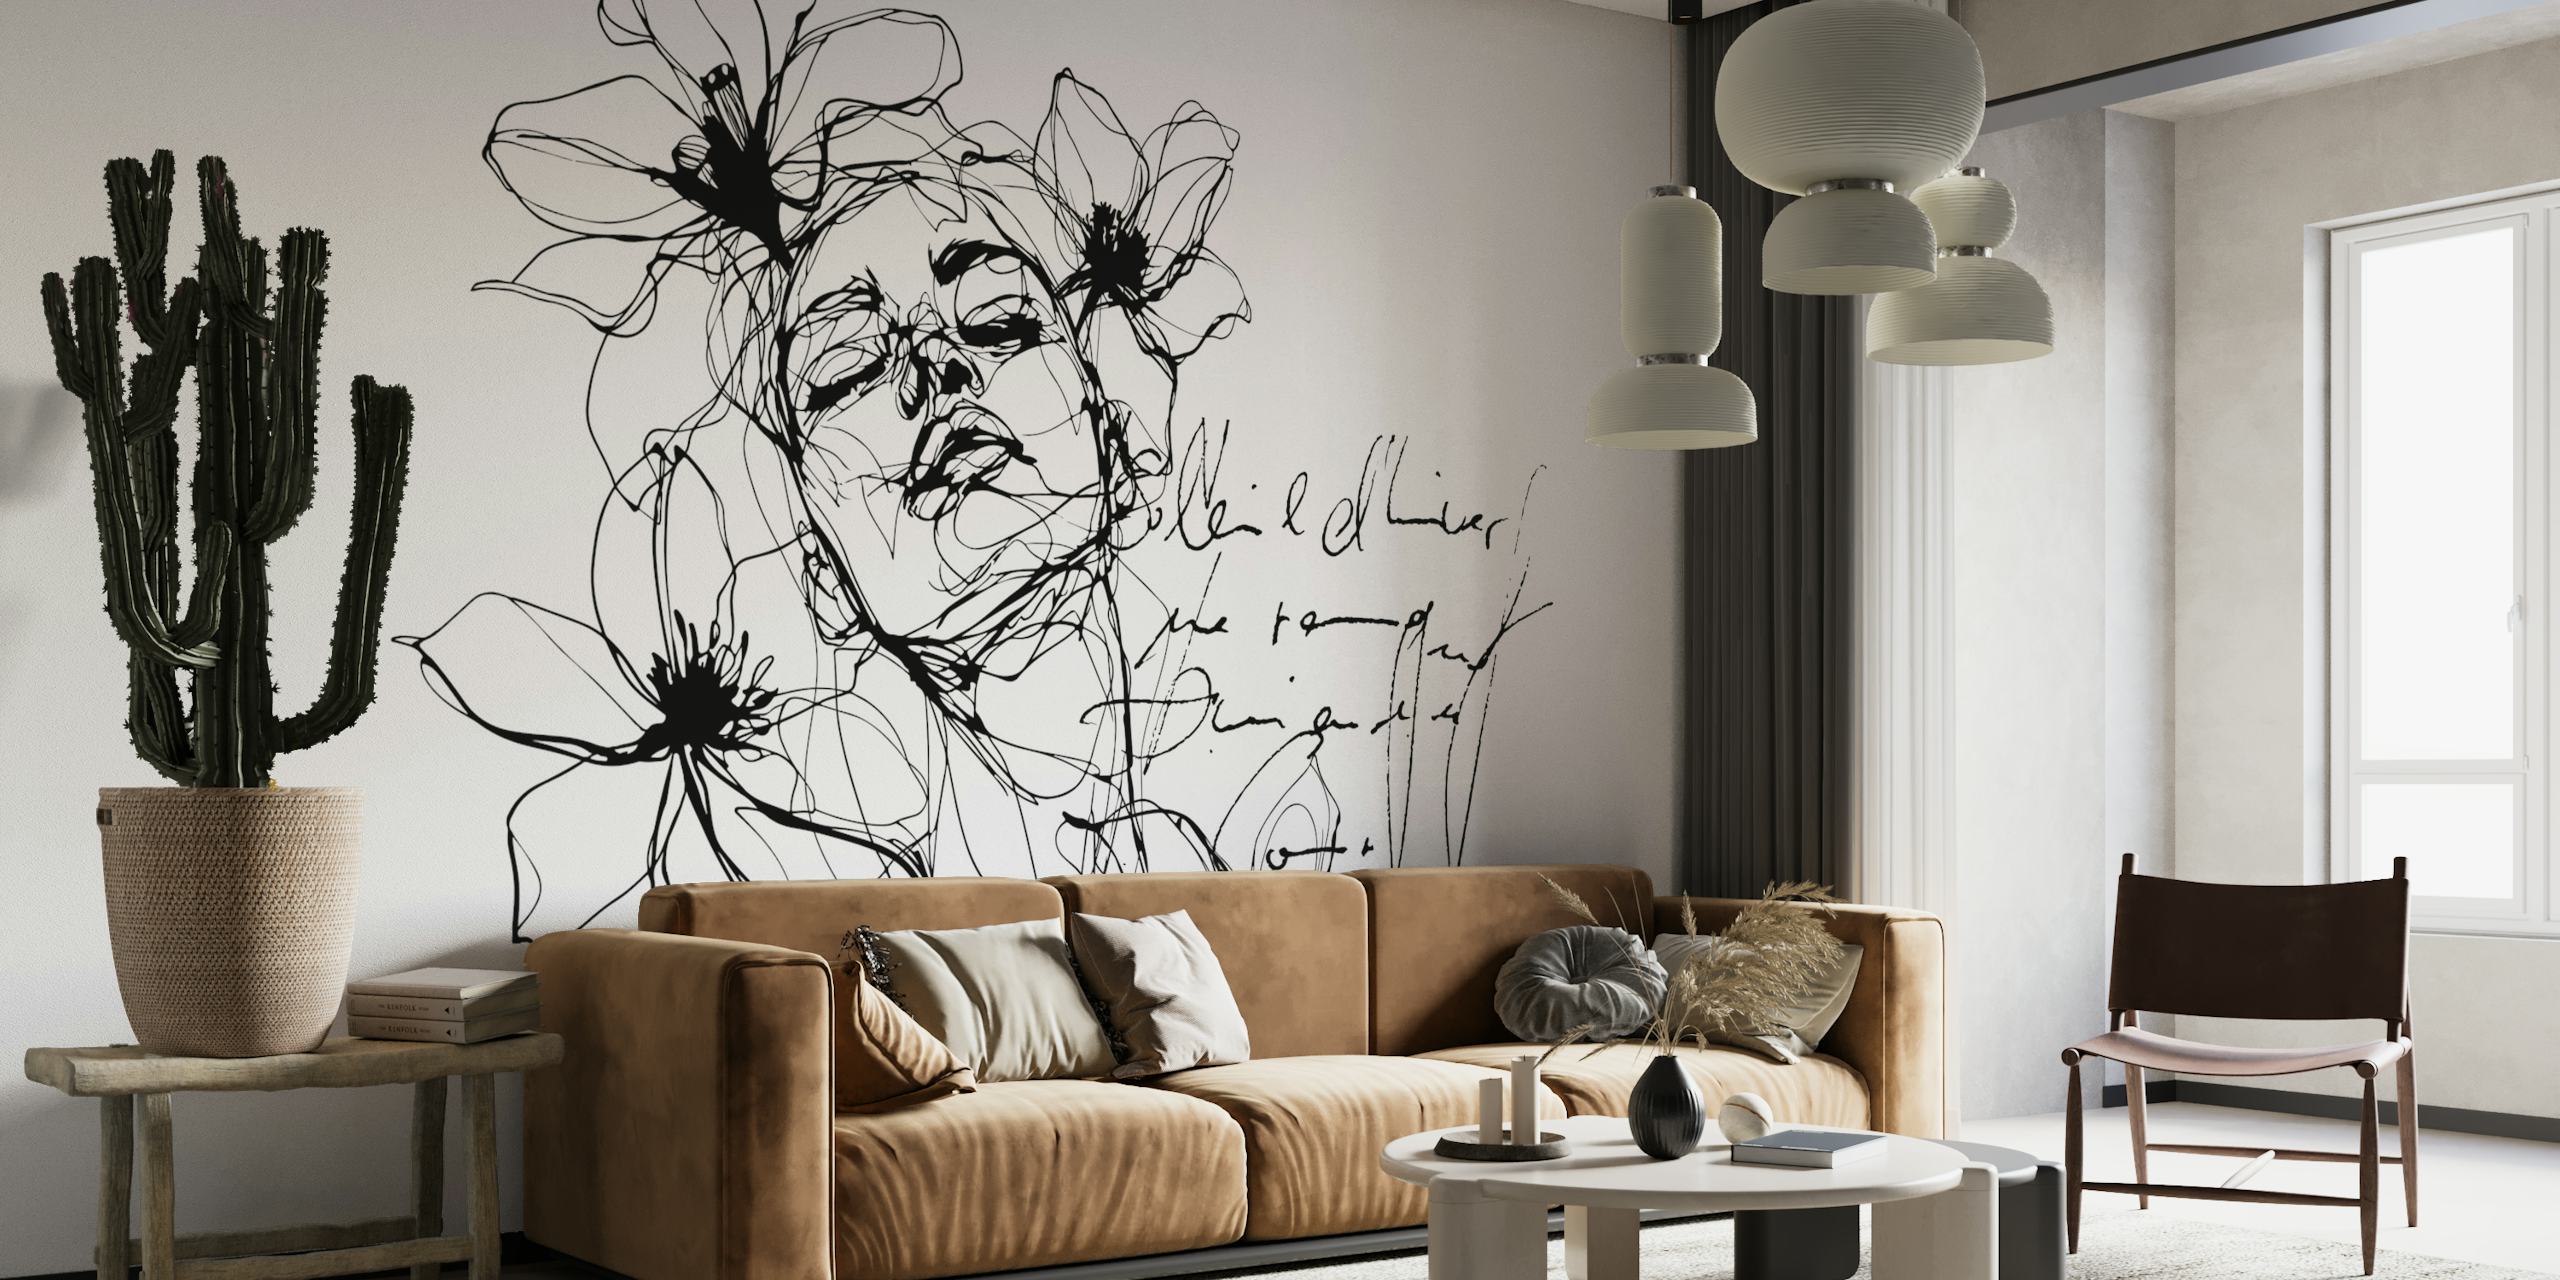 Mural de parede de arte minimalista de uma figura feminina com detalhes florais em preto e branco